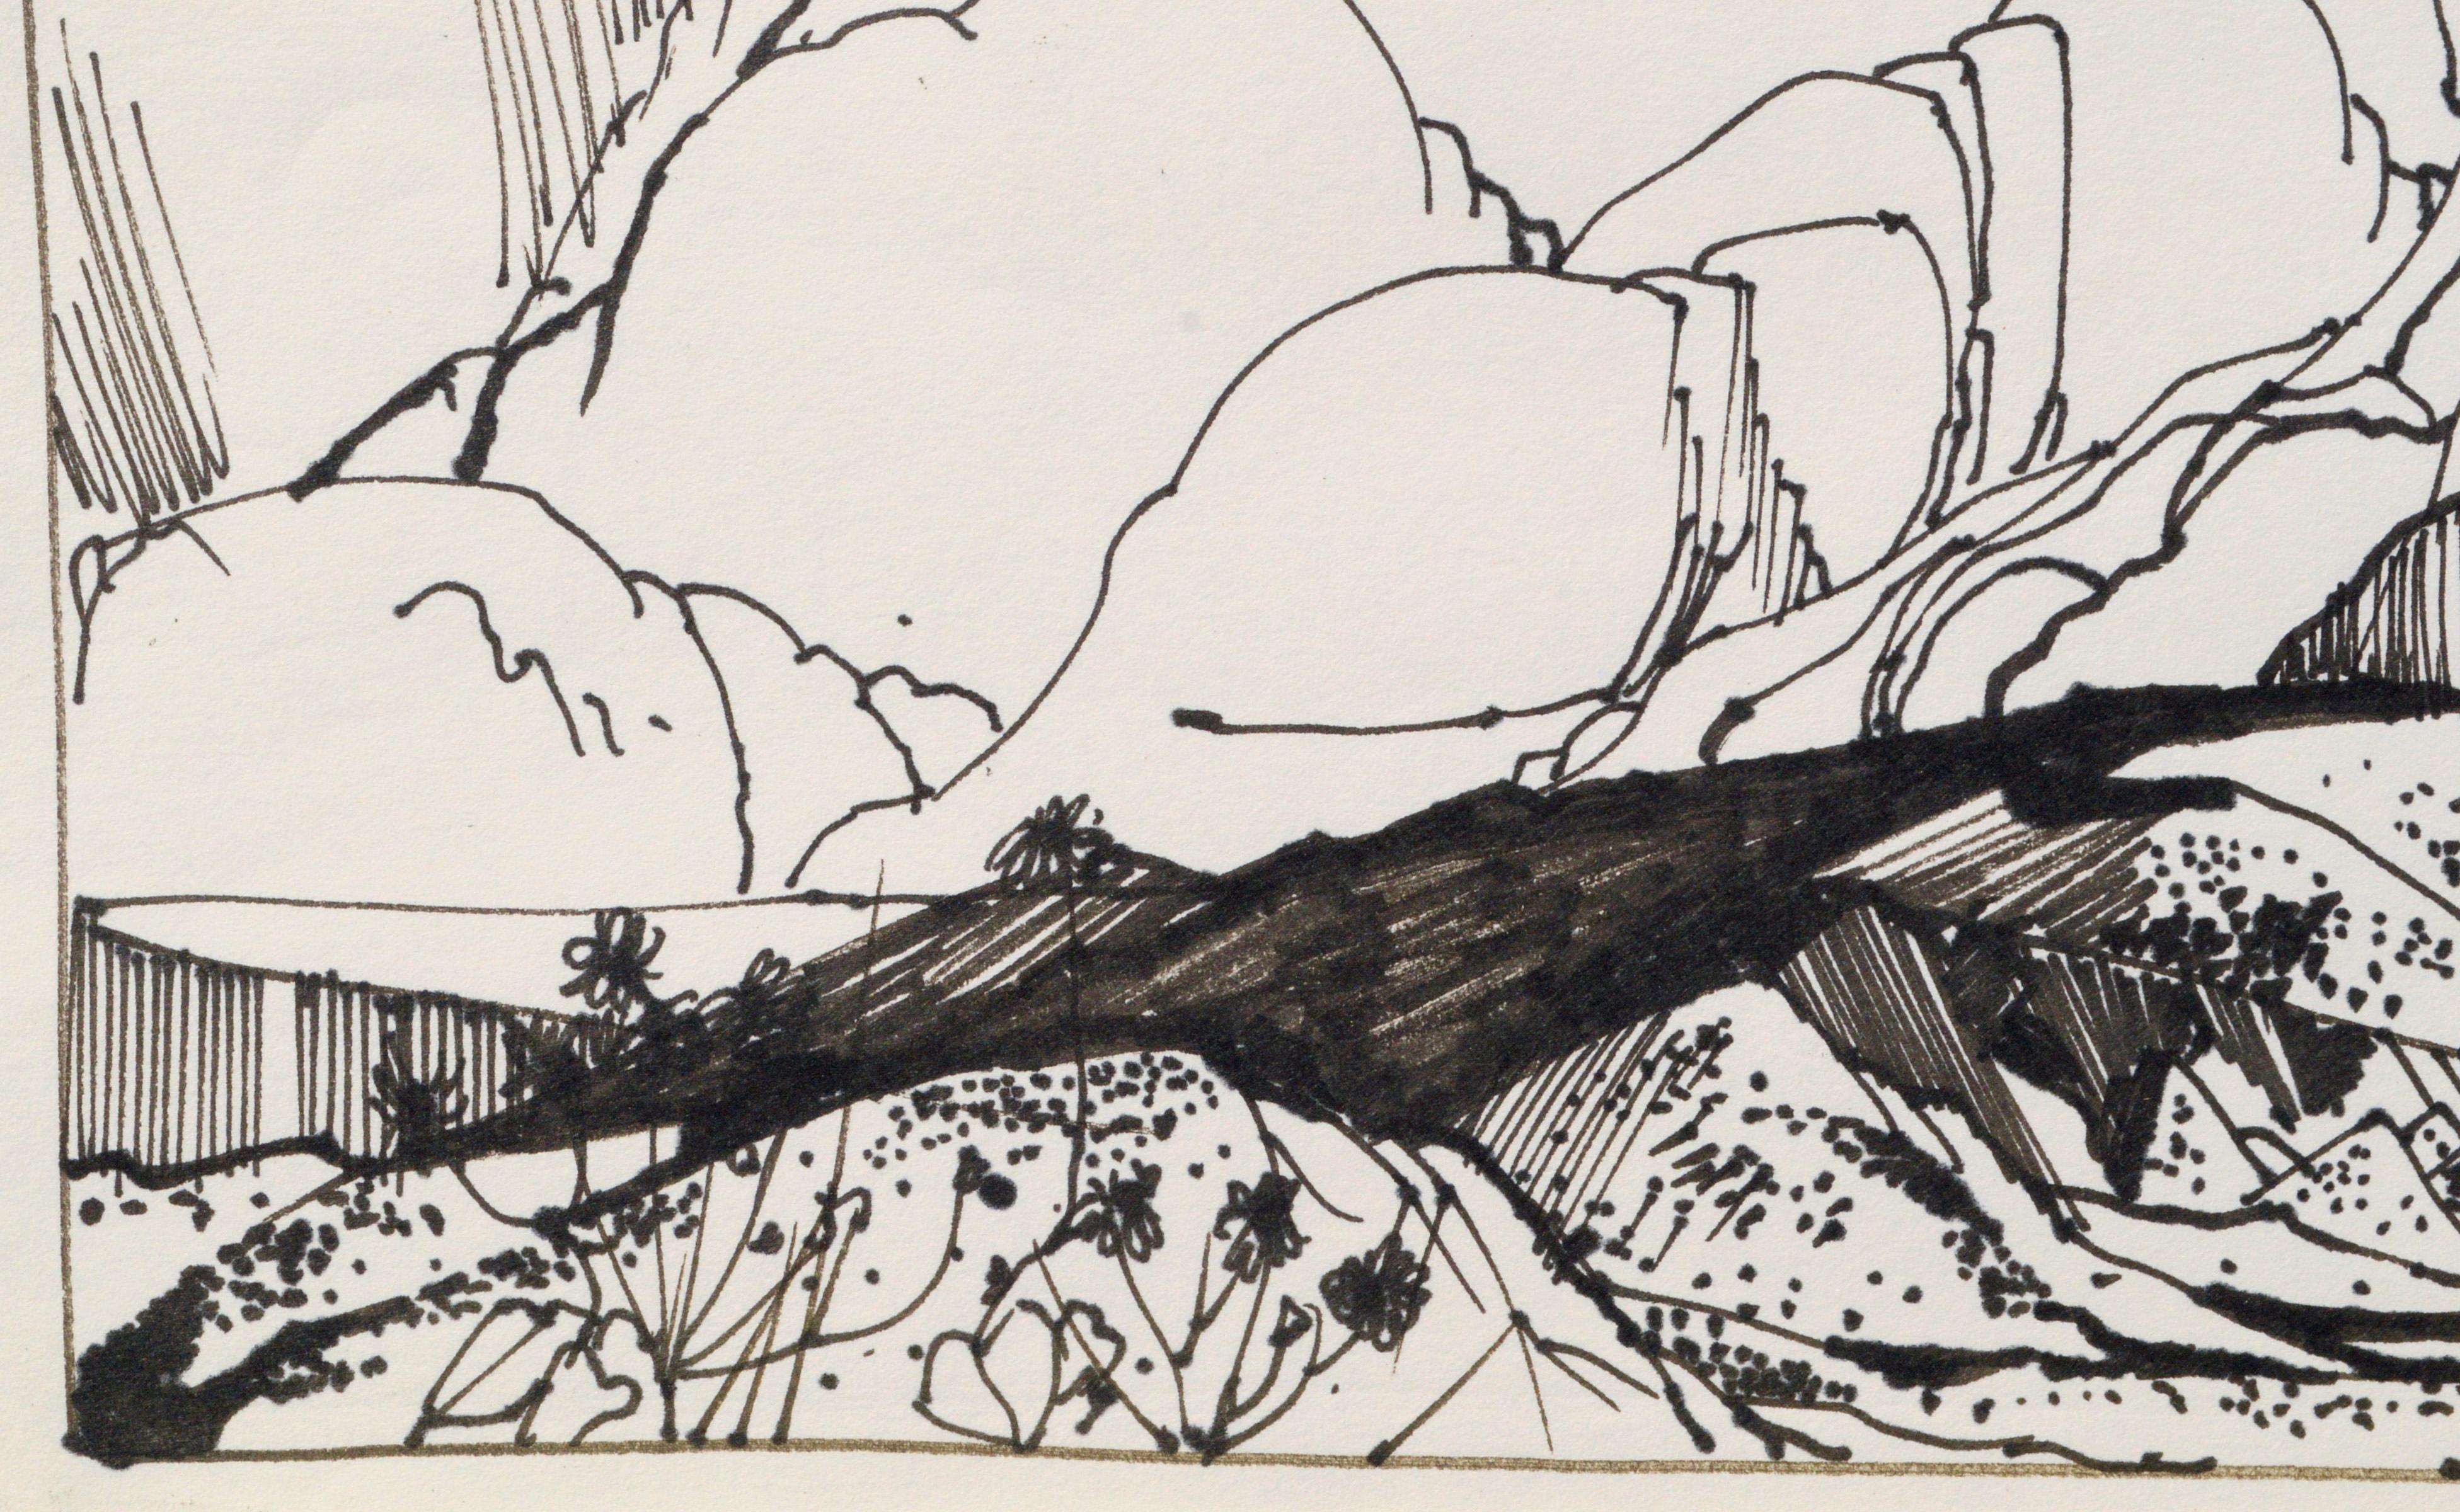 Dessin au trait de paysage audacieux avec de gros nuages sur un paysage désertique par l'artiste listé du Maine Laurence Sisson (américain, 1928-2015). Cette œuvre n'est pas signée, mais a été acquise auprès de David Sisson, le fils de l'artiste